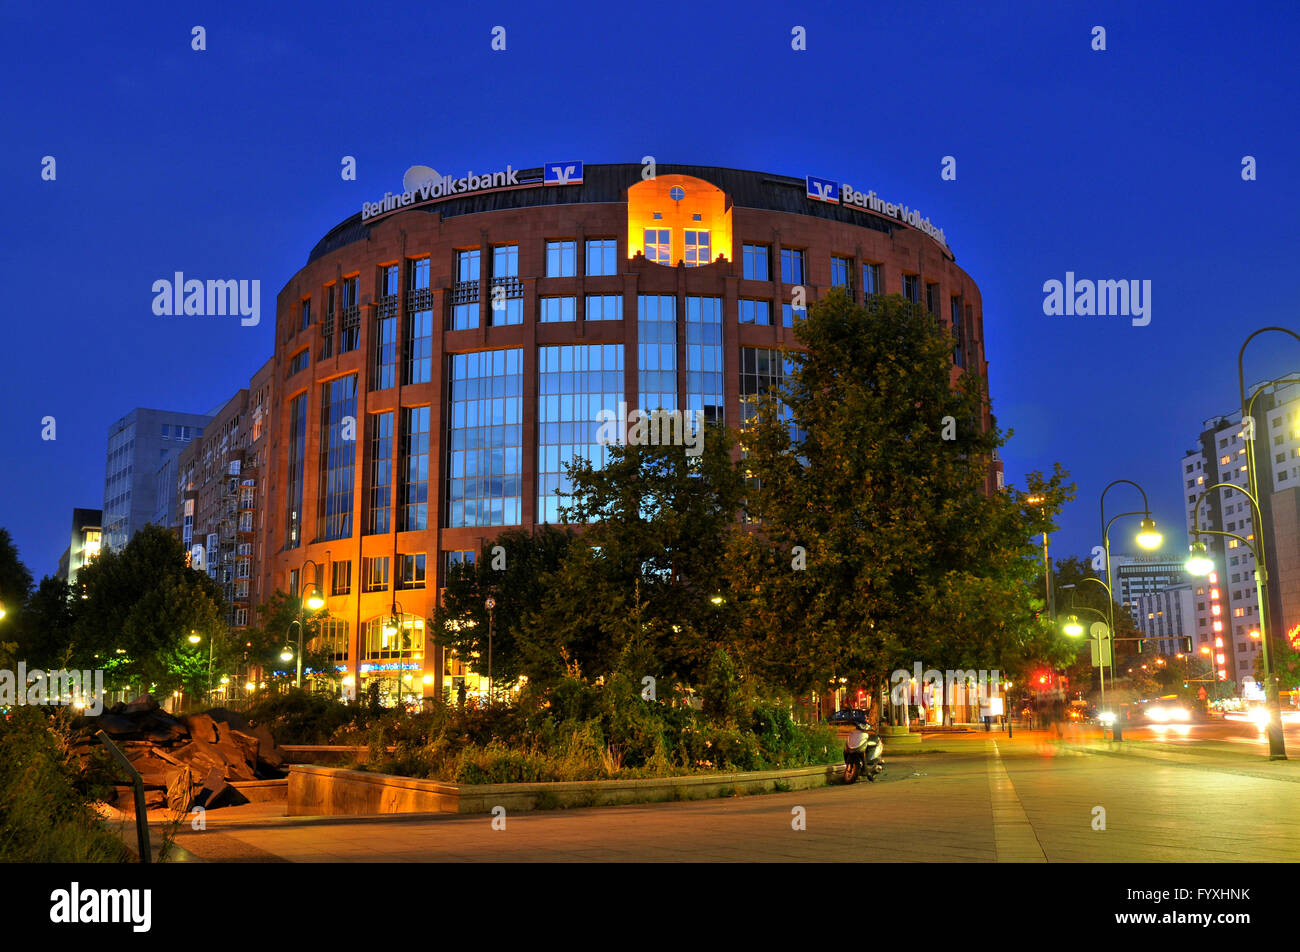 Banca Popolare di Berlino, co-operative bank, Olof-Palme-Platz, Budapester Strasse, il Tiergarten, nel quartiere Mitte di Berlino, Germania Foto Stock